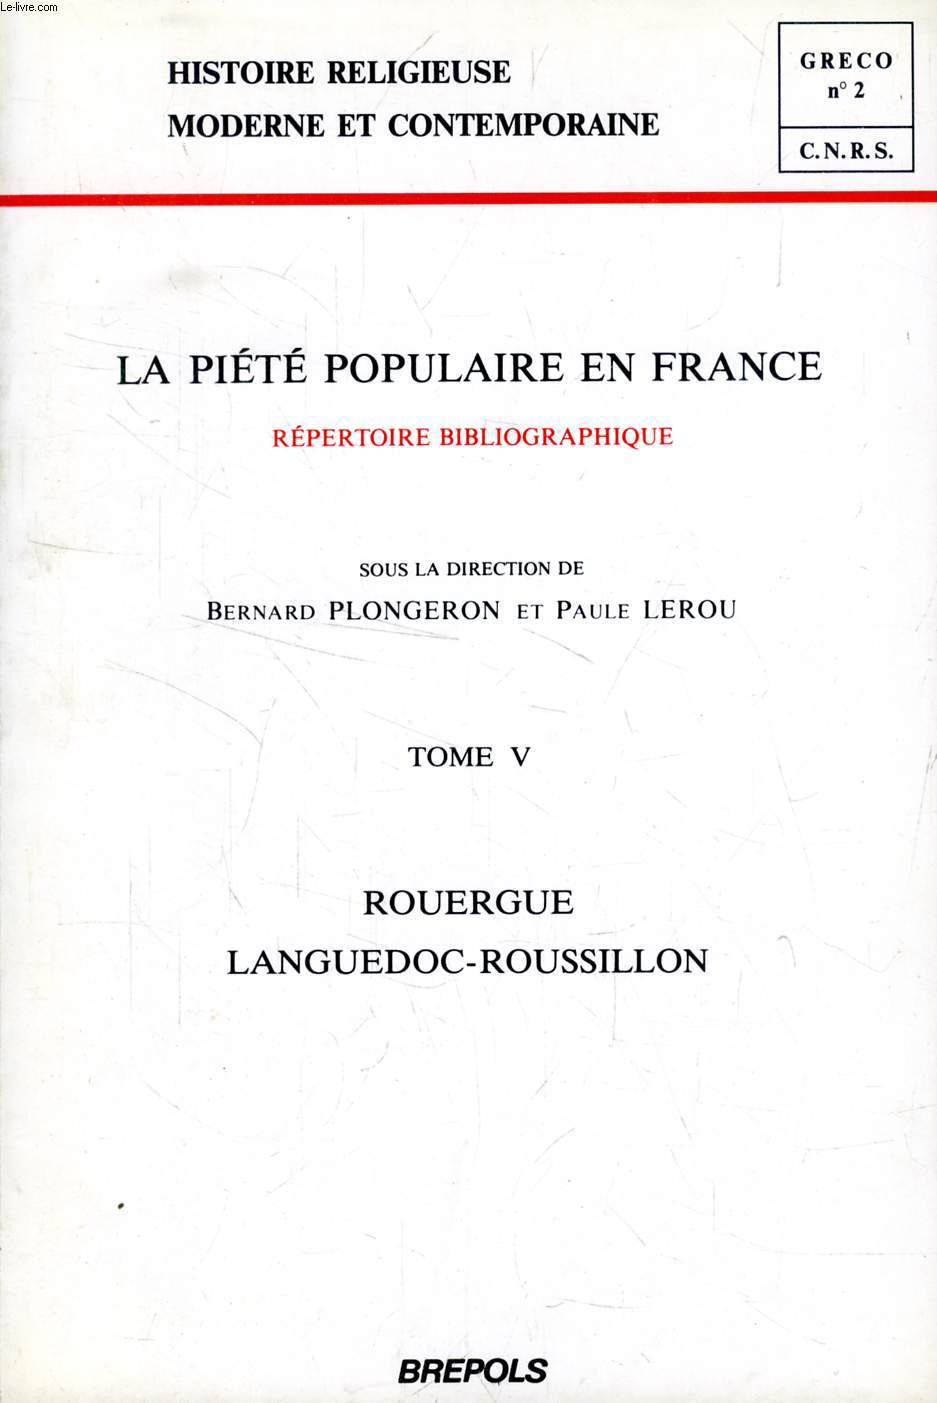 LA PIETE POPULAIRE EN FRANCE, REPERTOIRE BIBLIOGRAPHIQUE, TOME V, ROUERGUE, LANGUEDOC-ROUSSILLON